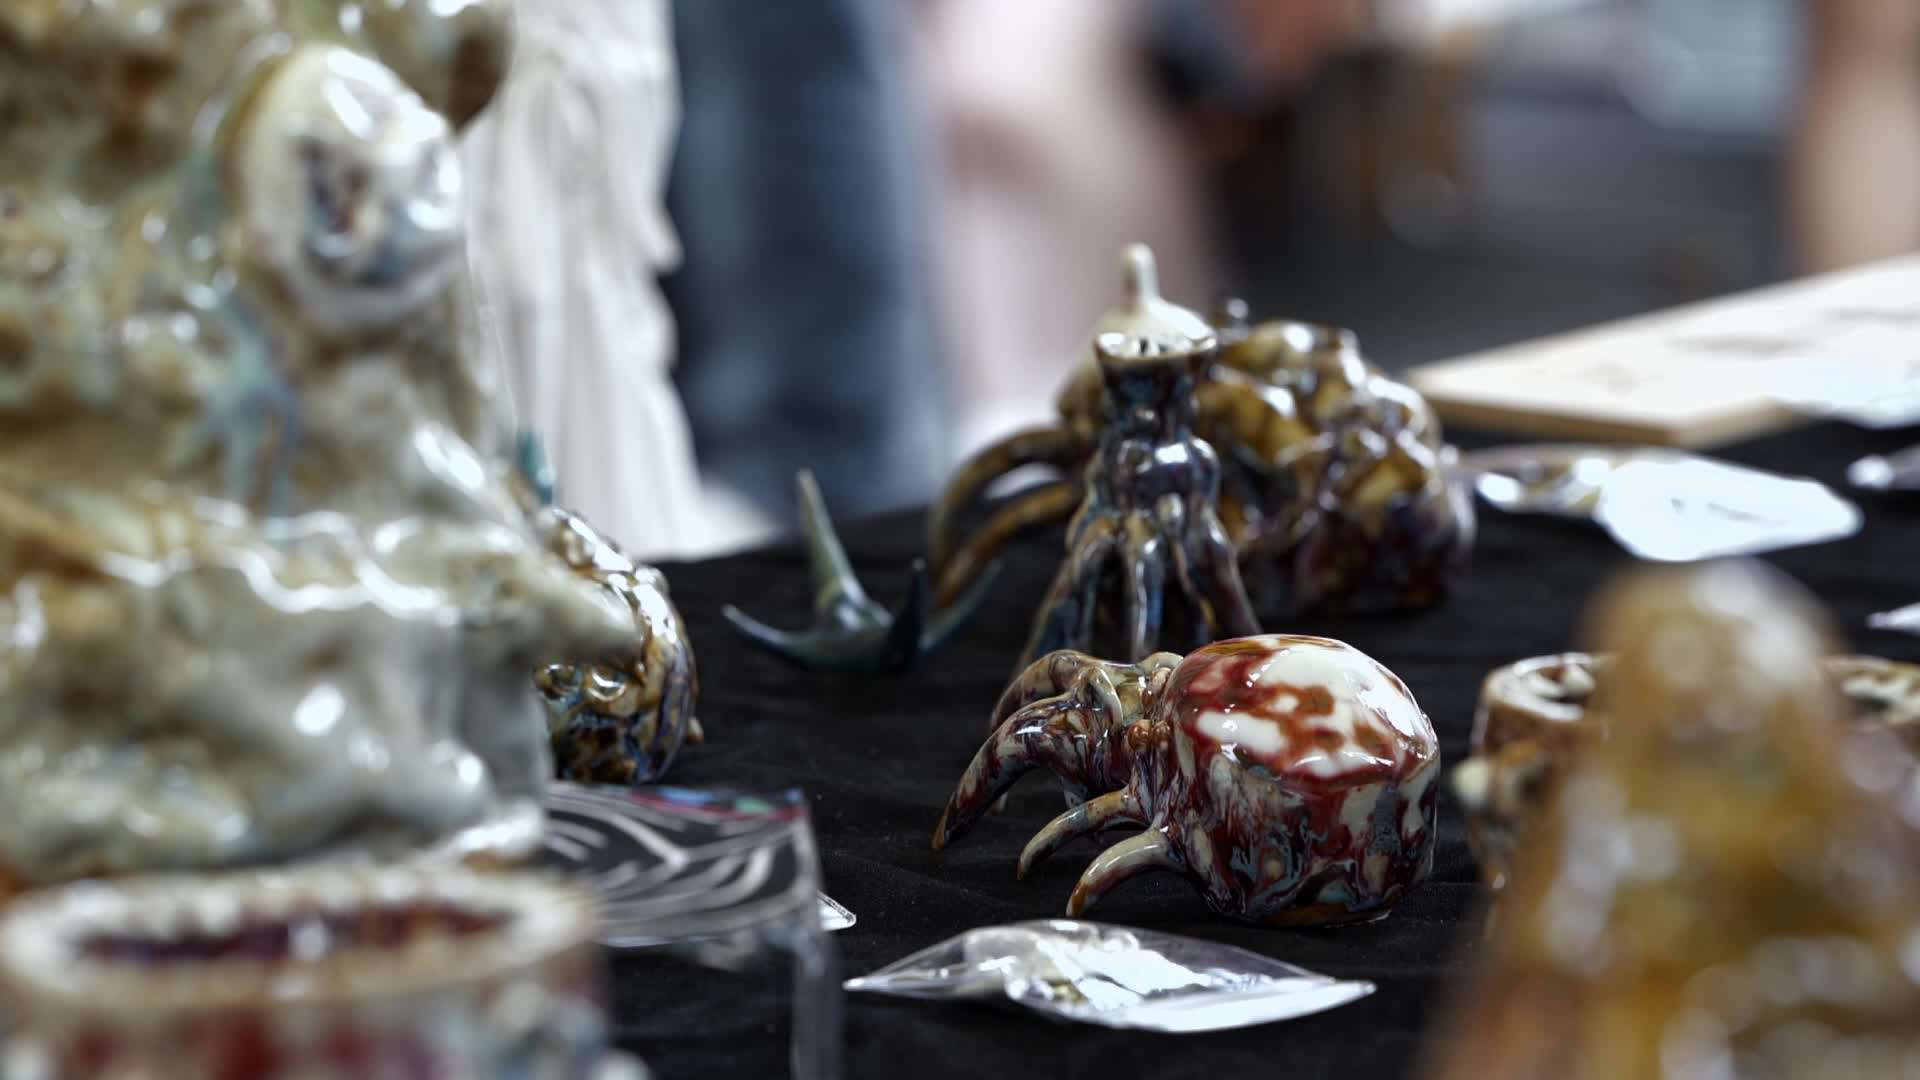 奇形怪状的陶瓷也会有人喜欢吗 景德镇青年陶艺家小黑专访